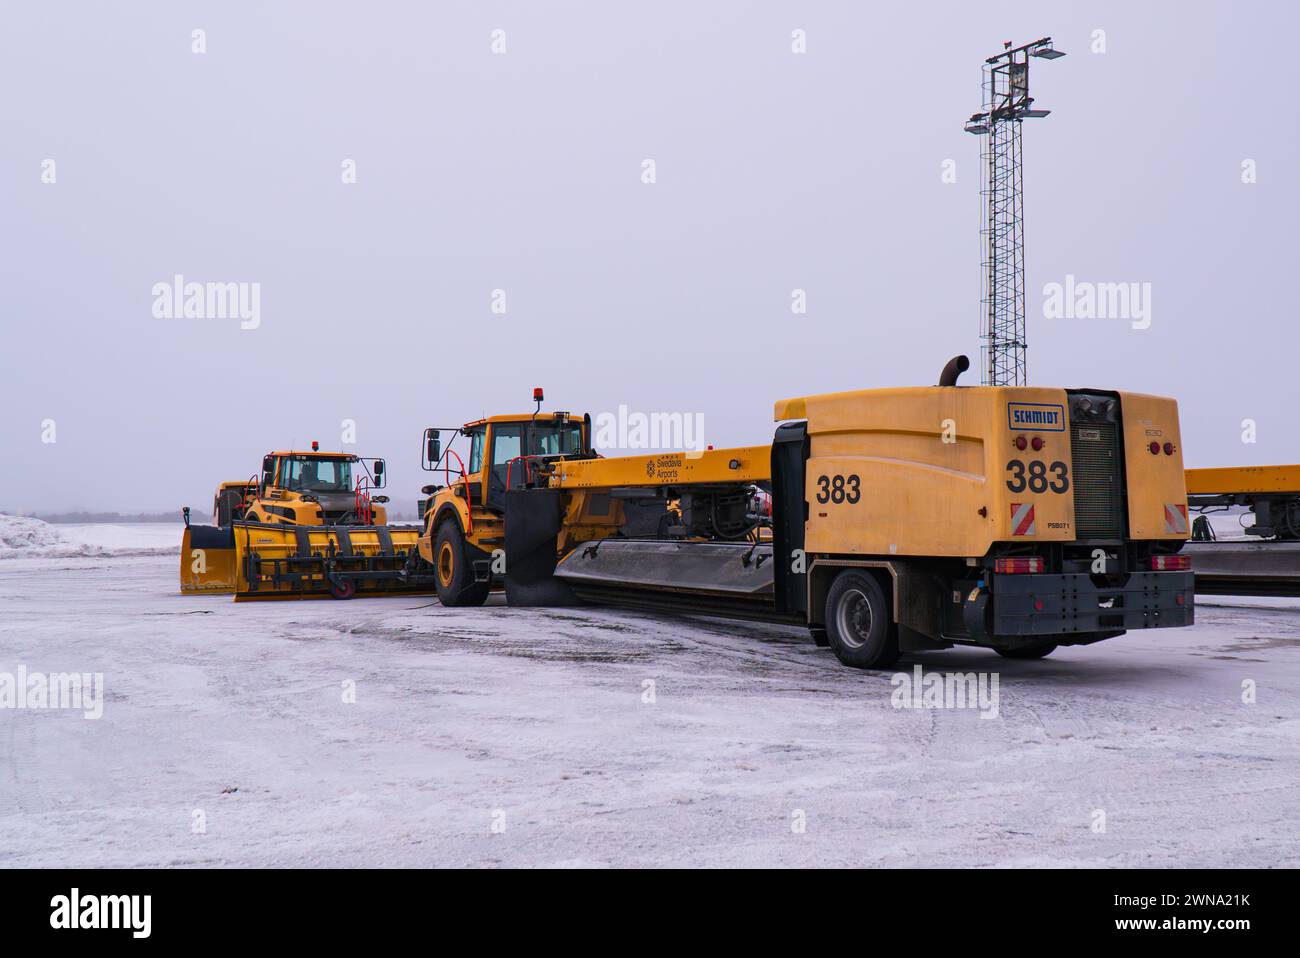 Un aratro, una spazzatrice e una soffiatrice (spazzaneve) all'aeroporto di Umeå, aeroporti di Swedavia, gialla, da Schmidt, in attesa di una prossima nevicata. Foto Stock